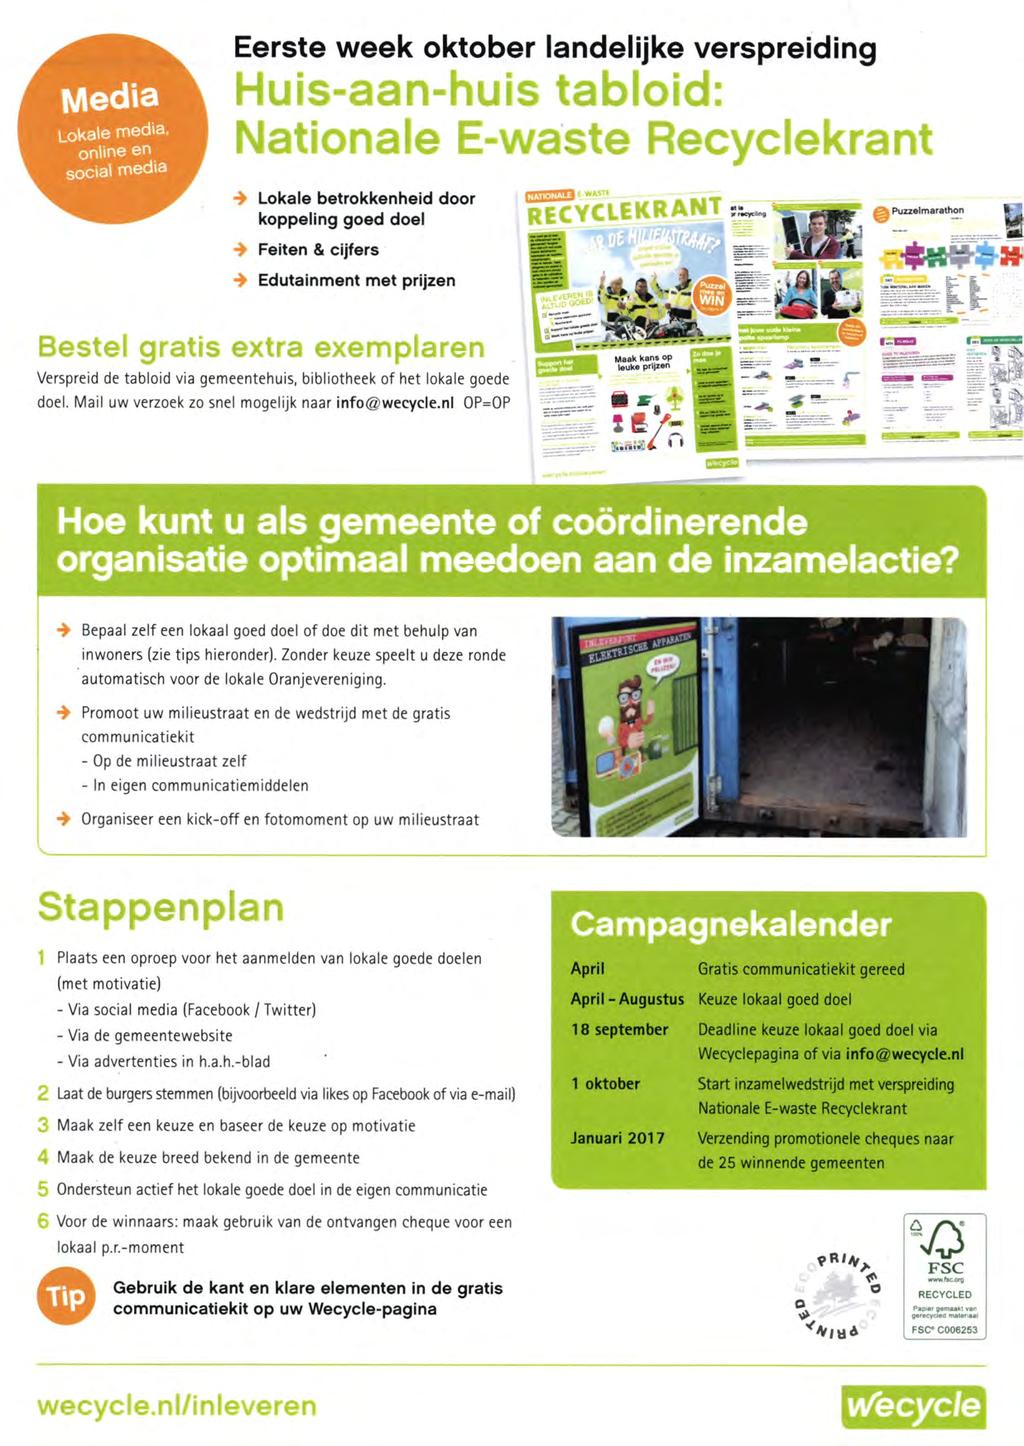 Media Lokale media, online en social media Eerste week oktober landelijke verspreiding Huis-aan-huis tabloid: Nationale E-waste Recyclekrant Lokale betrokkenheid door koppeling goed doel ^VCLEKRANT